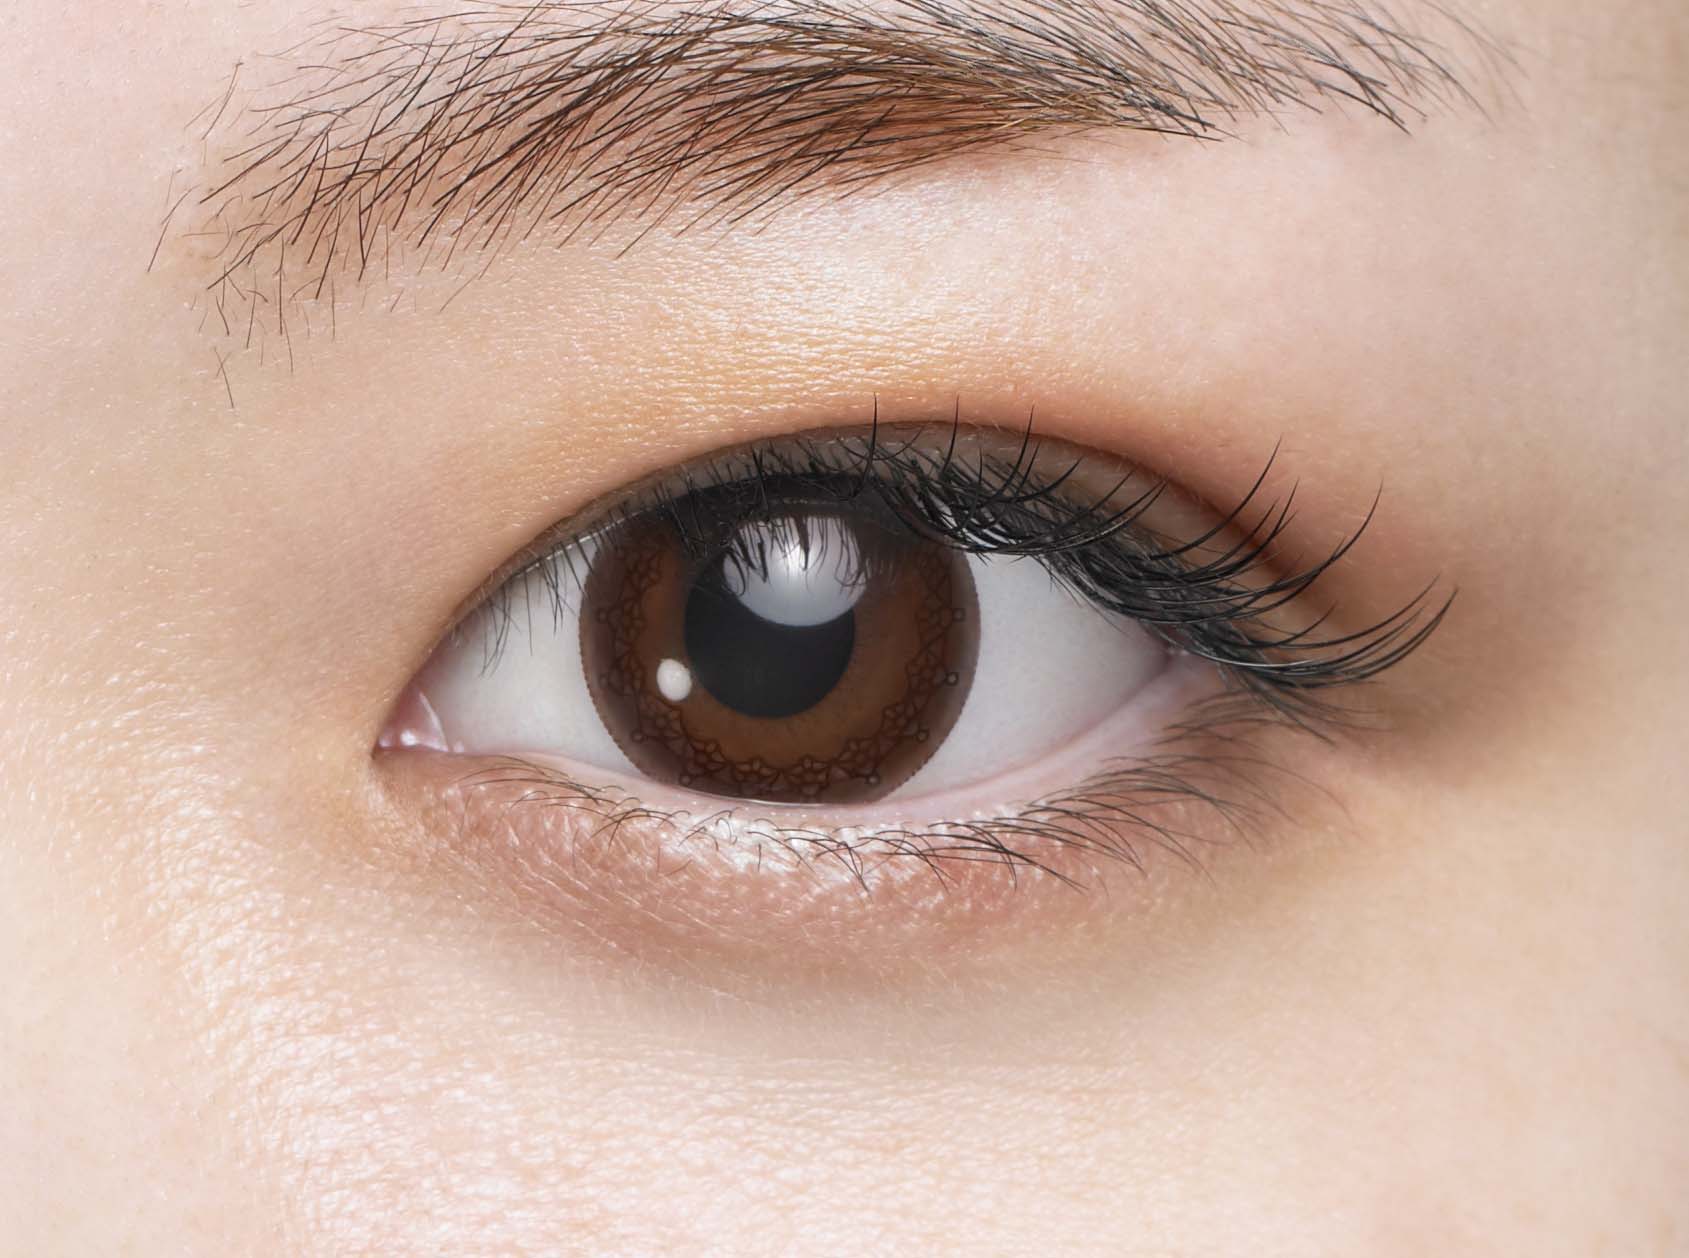 カラーコンタクトレンズ、Eye coffret リッチメイク 乱視用レンズ | 1dayを装用した状態の目のアップ画像